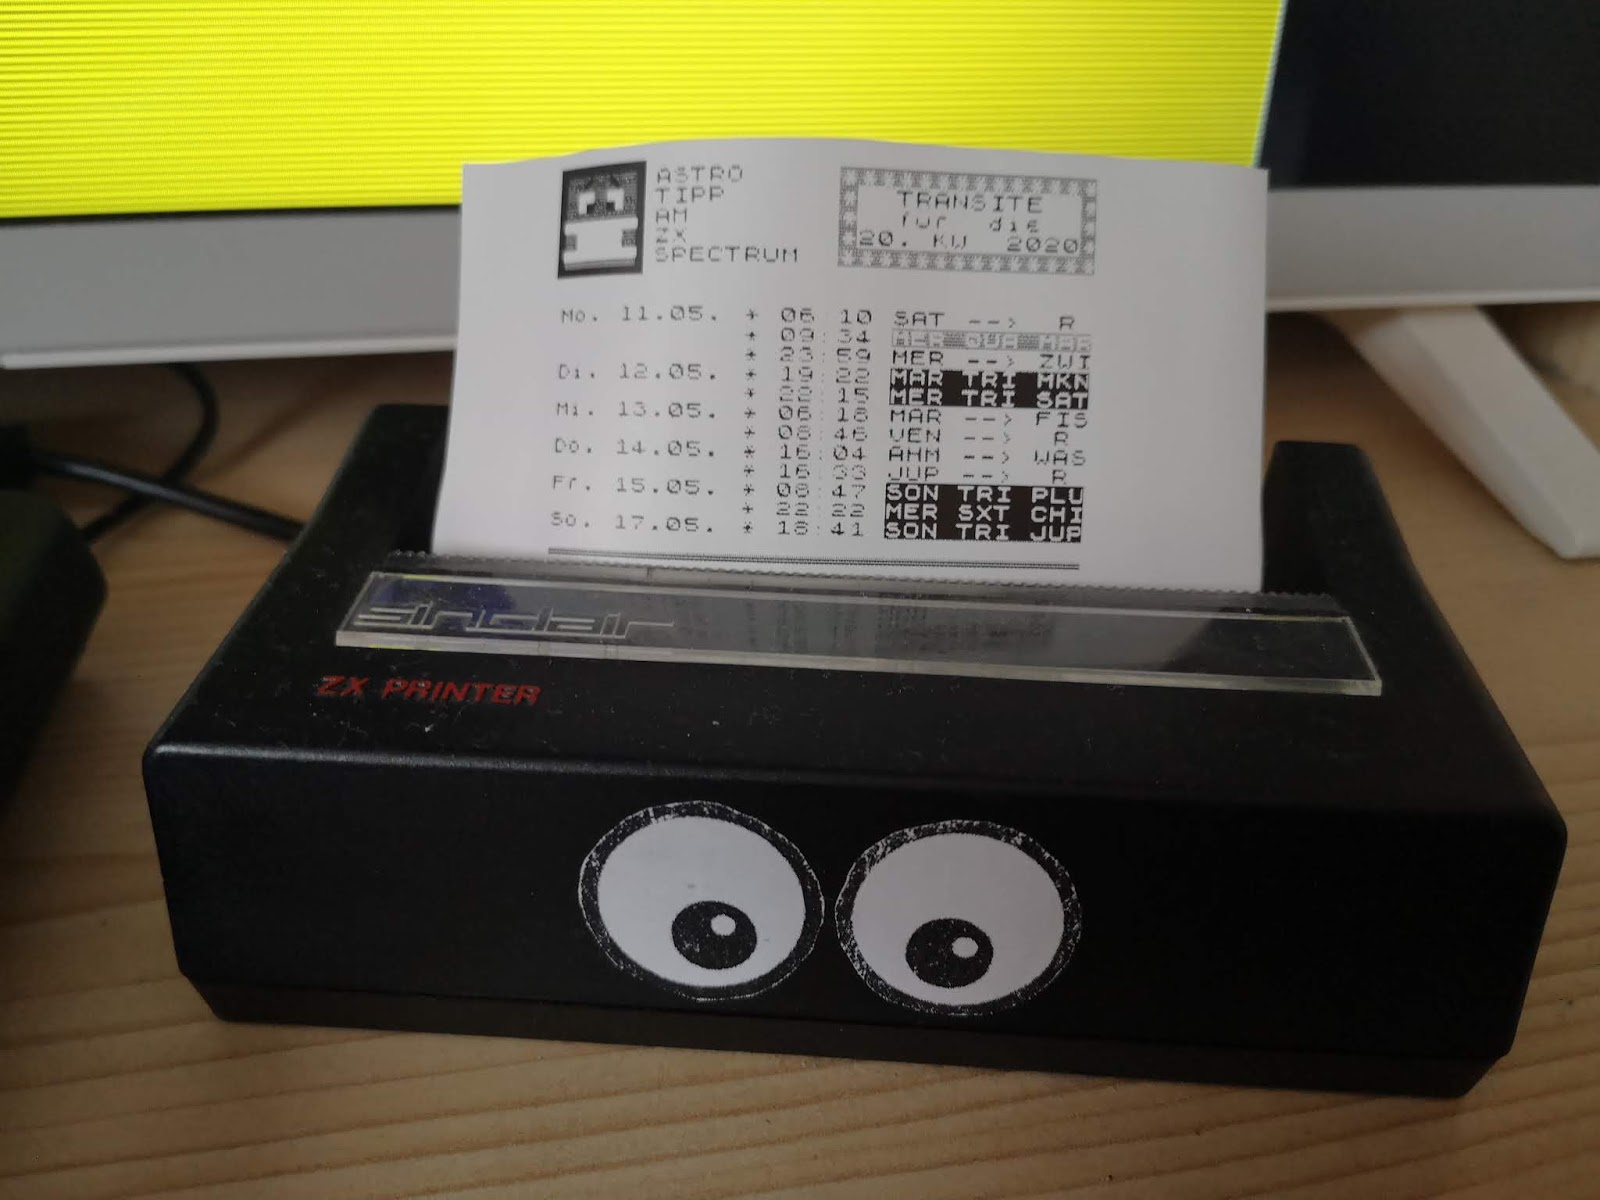 Astro-Tipps dieser Kalenderwoche am ZX Printer ausgedruckt